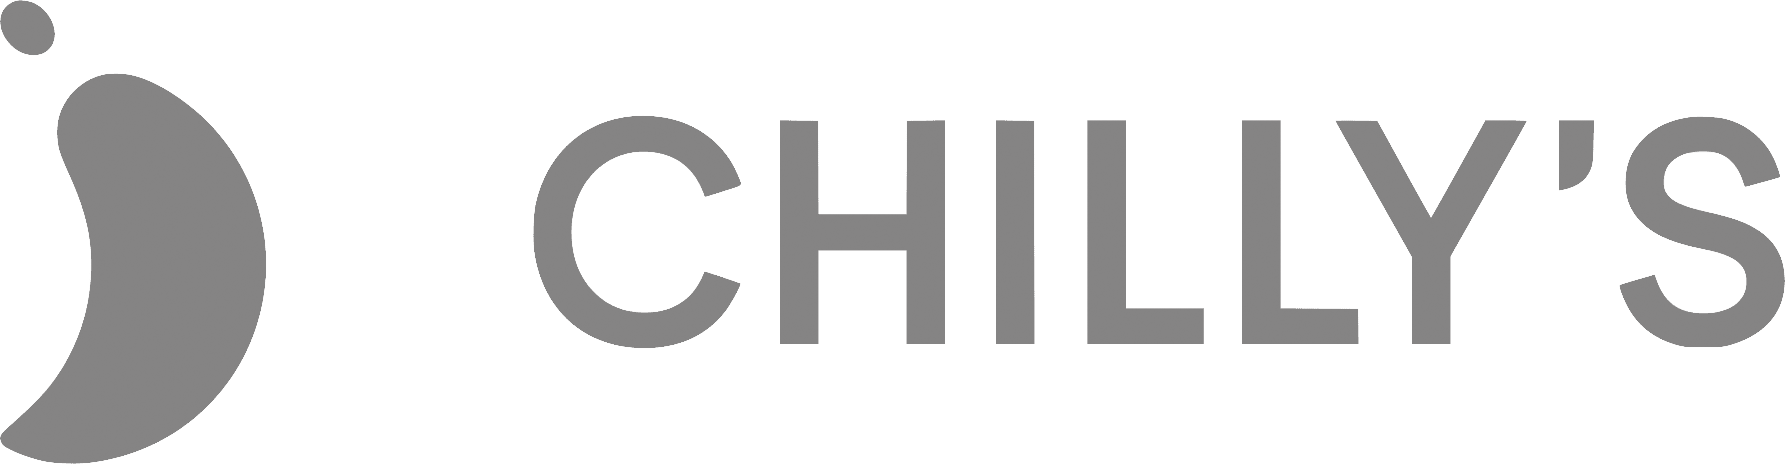 chillys logo